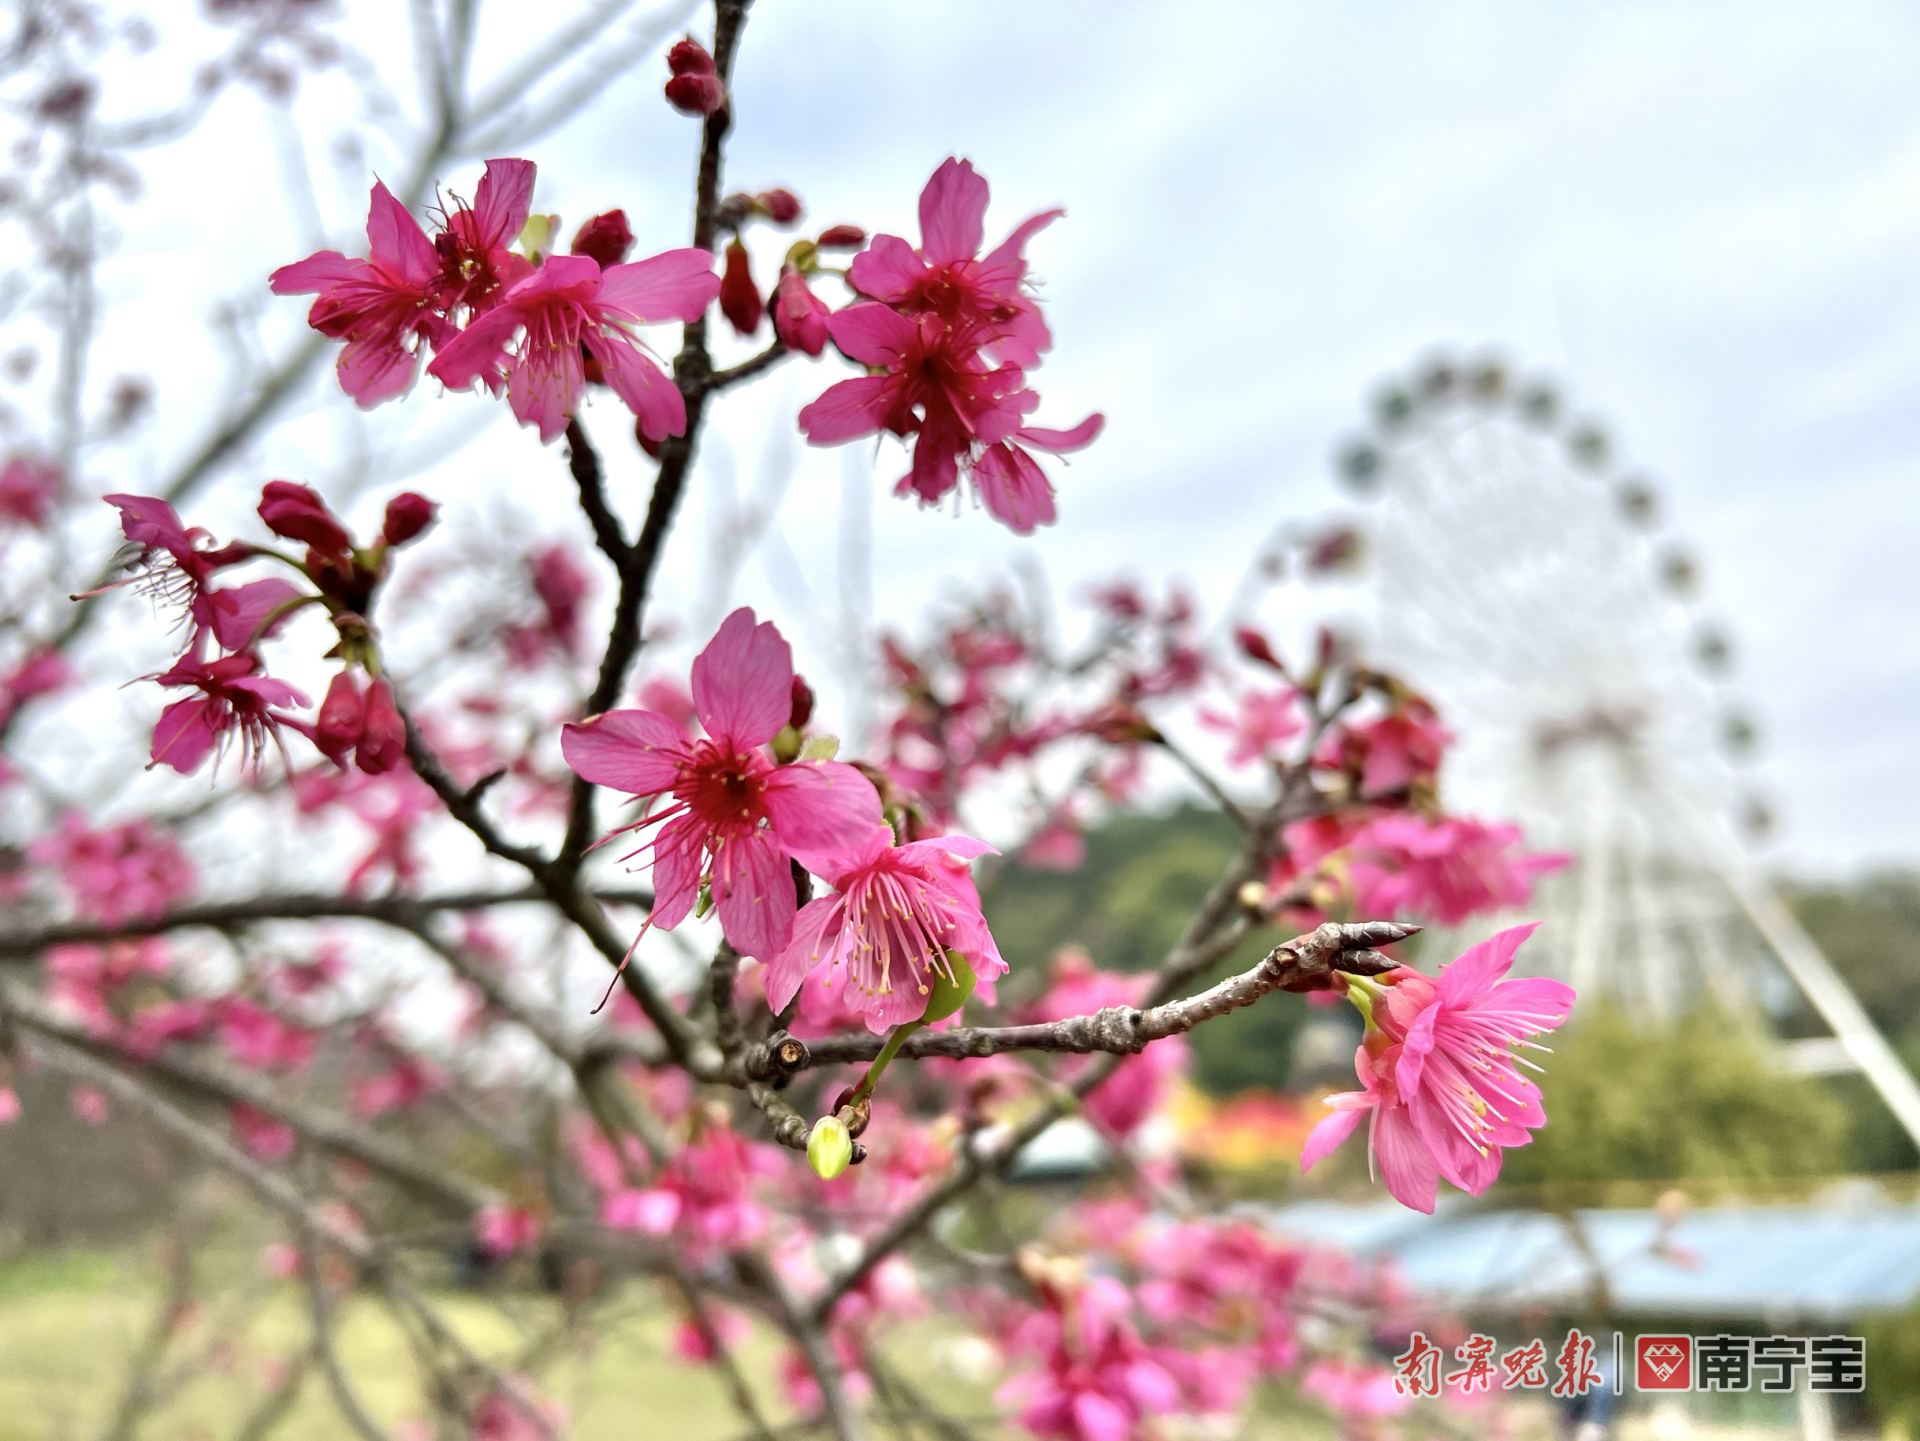 融融暖意叫醒春之歌 石门公园的樱花绽放了！